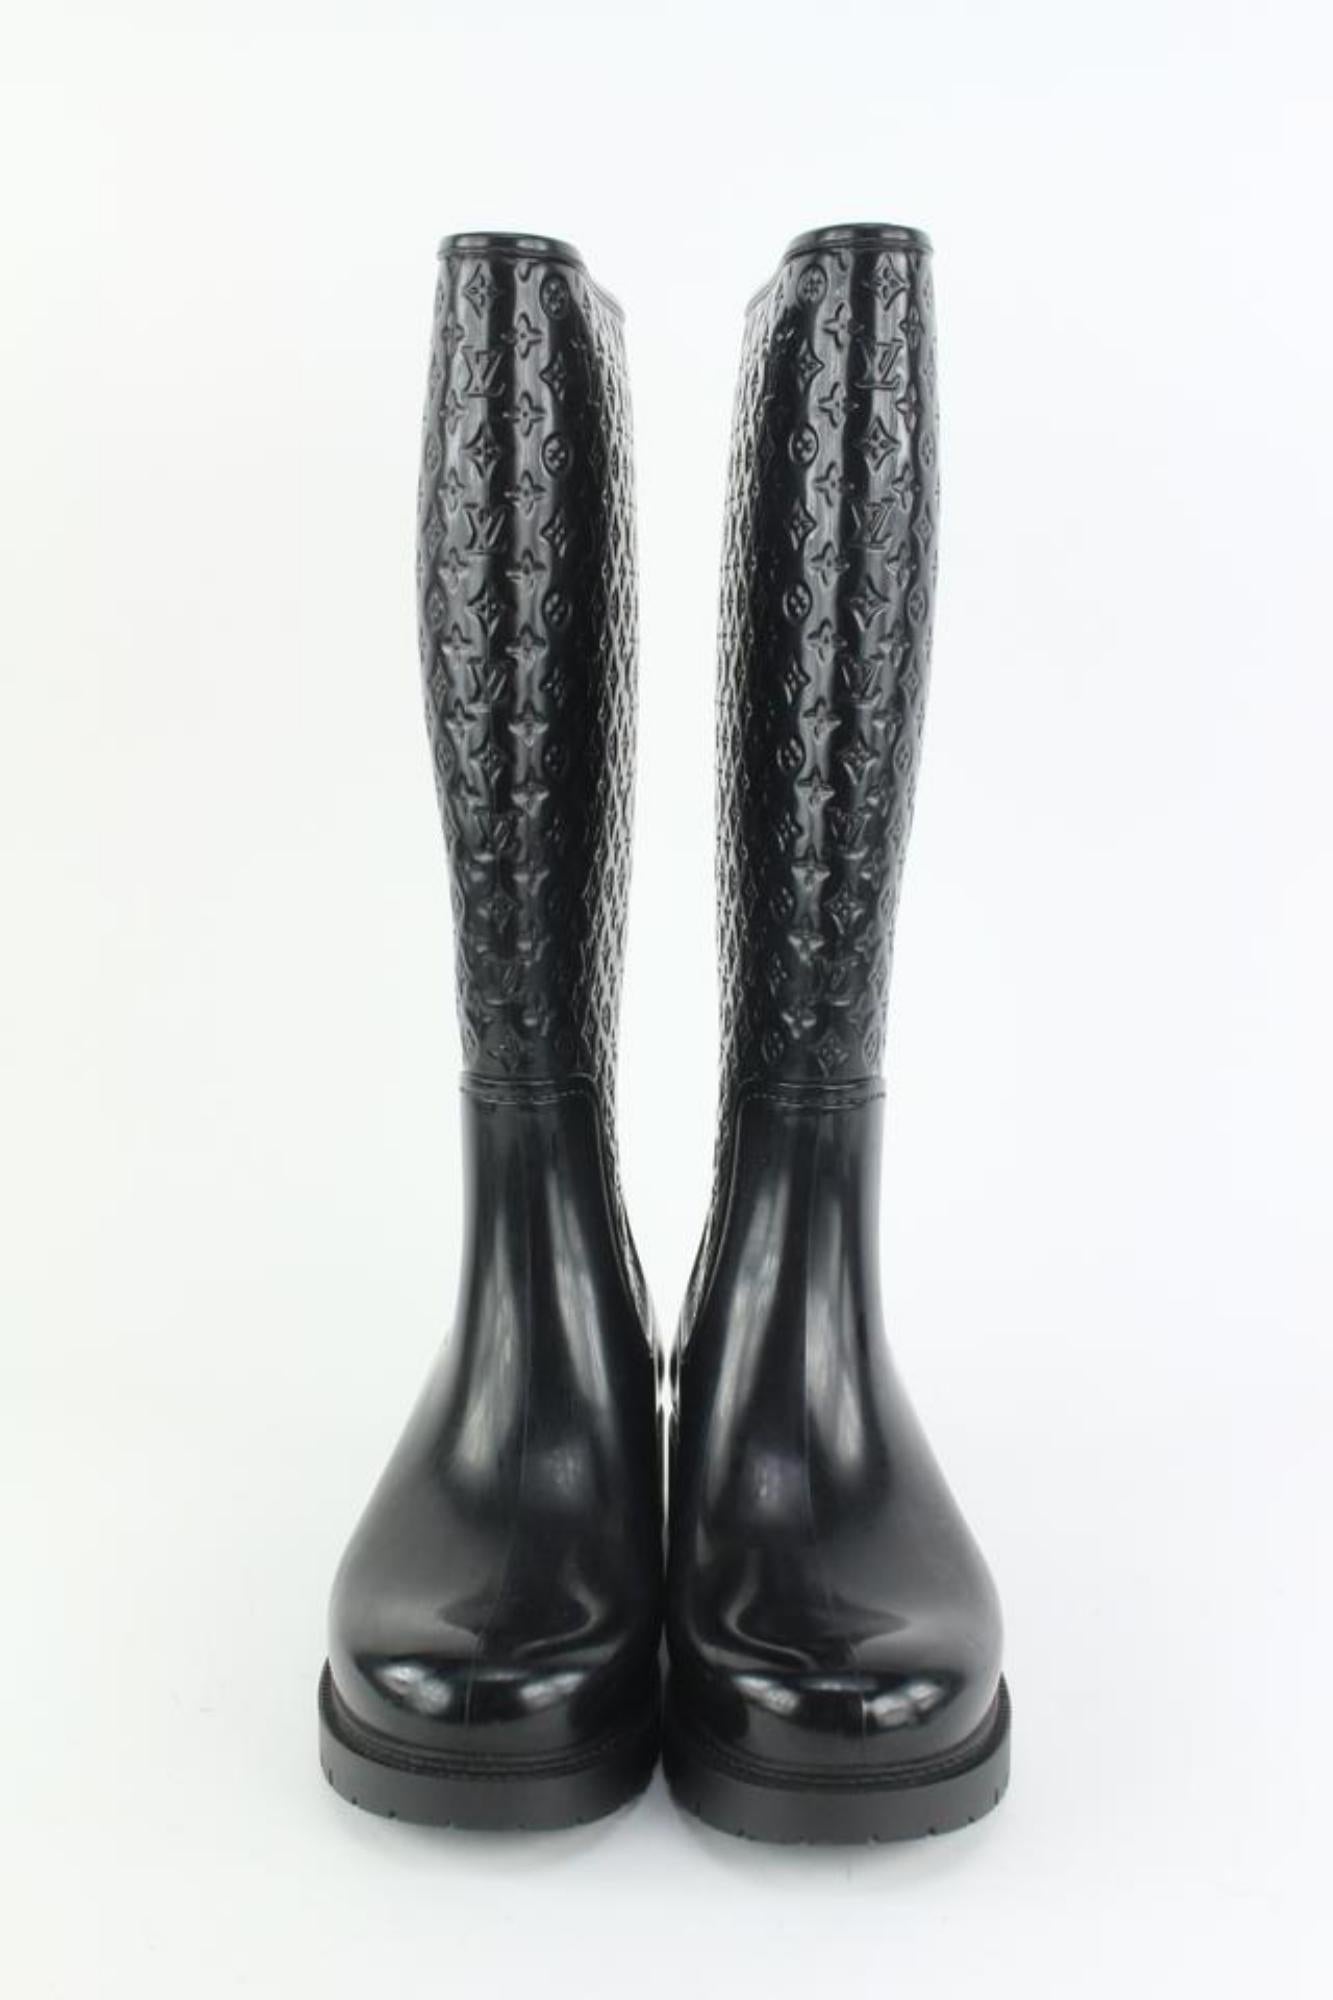 Louis Vuitton Women's 36 Black Rubber Rainboots Tall Rain Boots 9L1221 For Sale 1